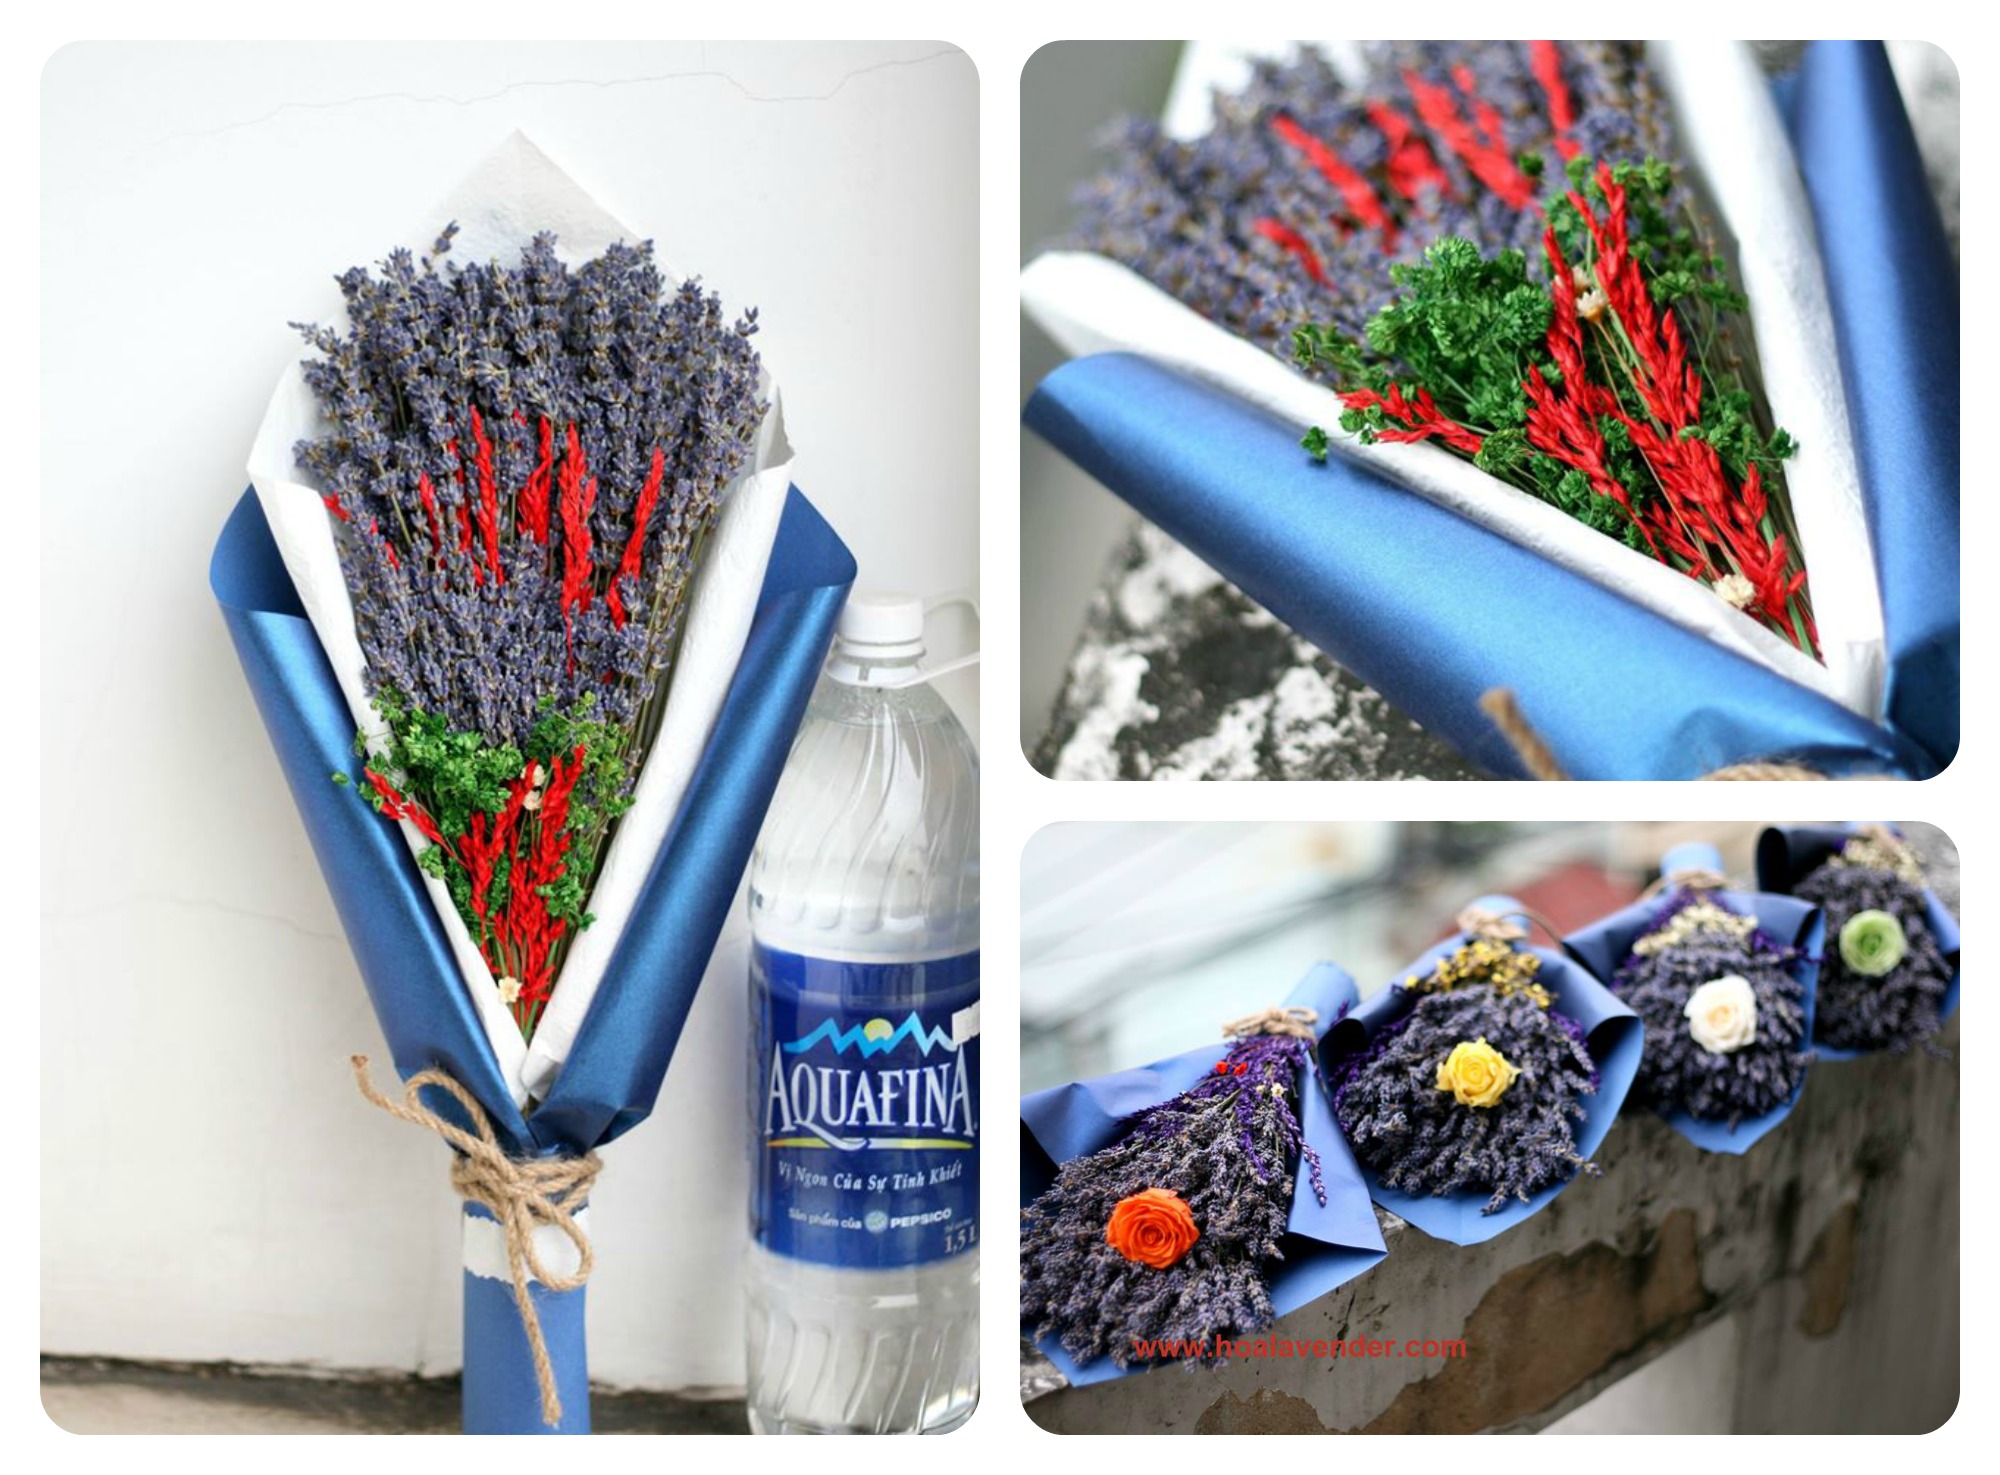 Hoa lavender khô mùa Giáng sinh: Chọn quà mải mê, giá cả rẻ ghê!